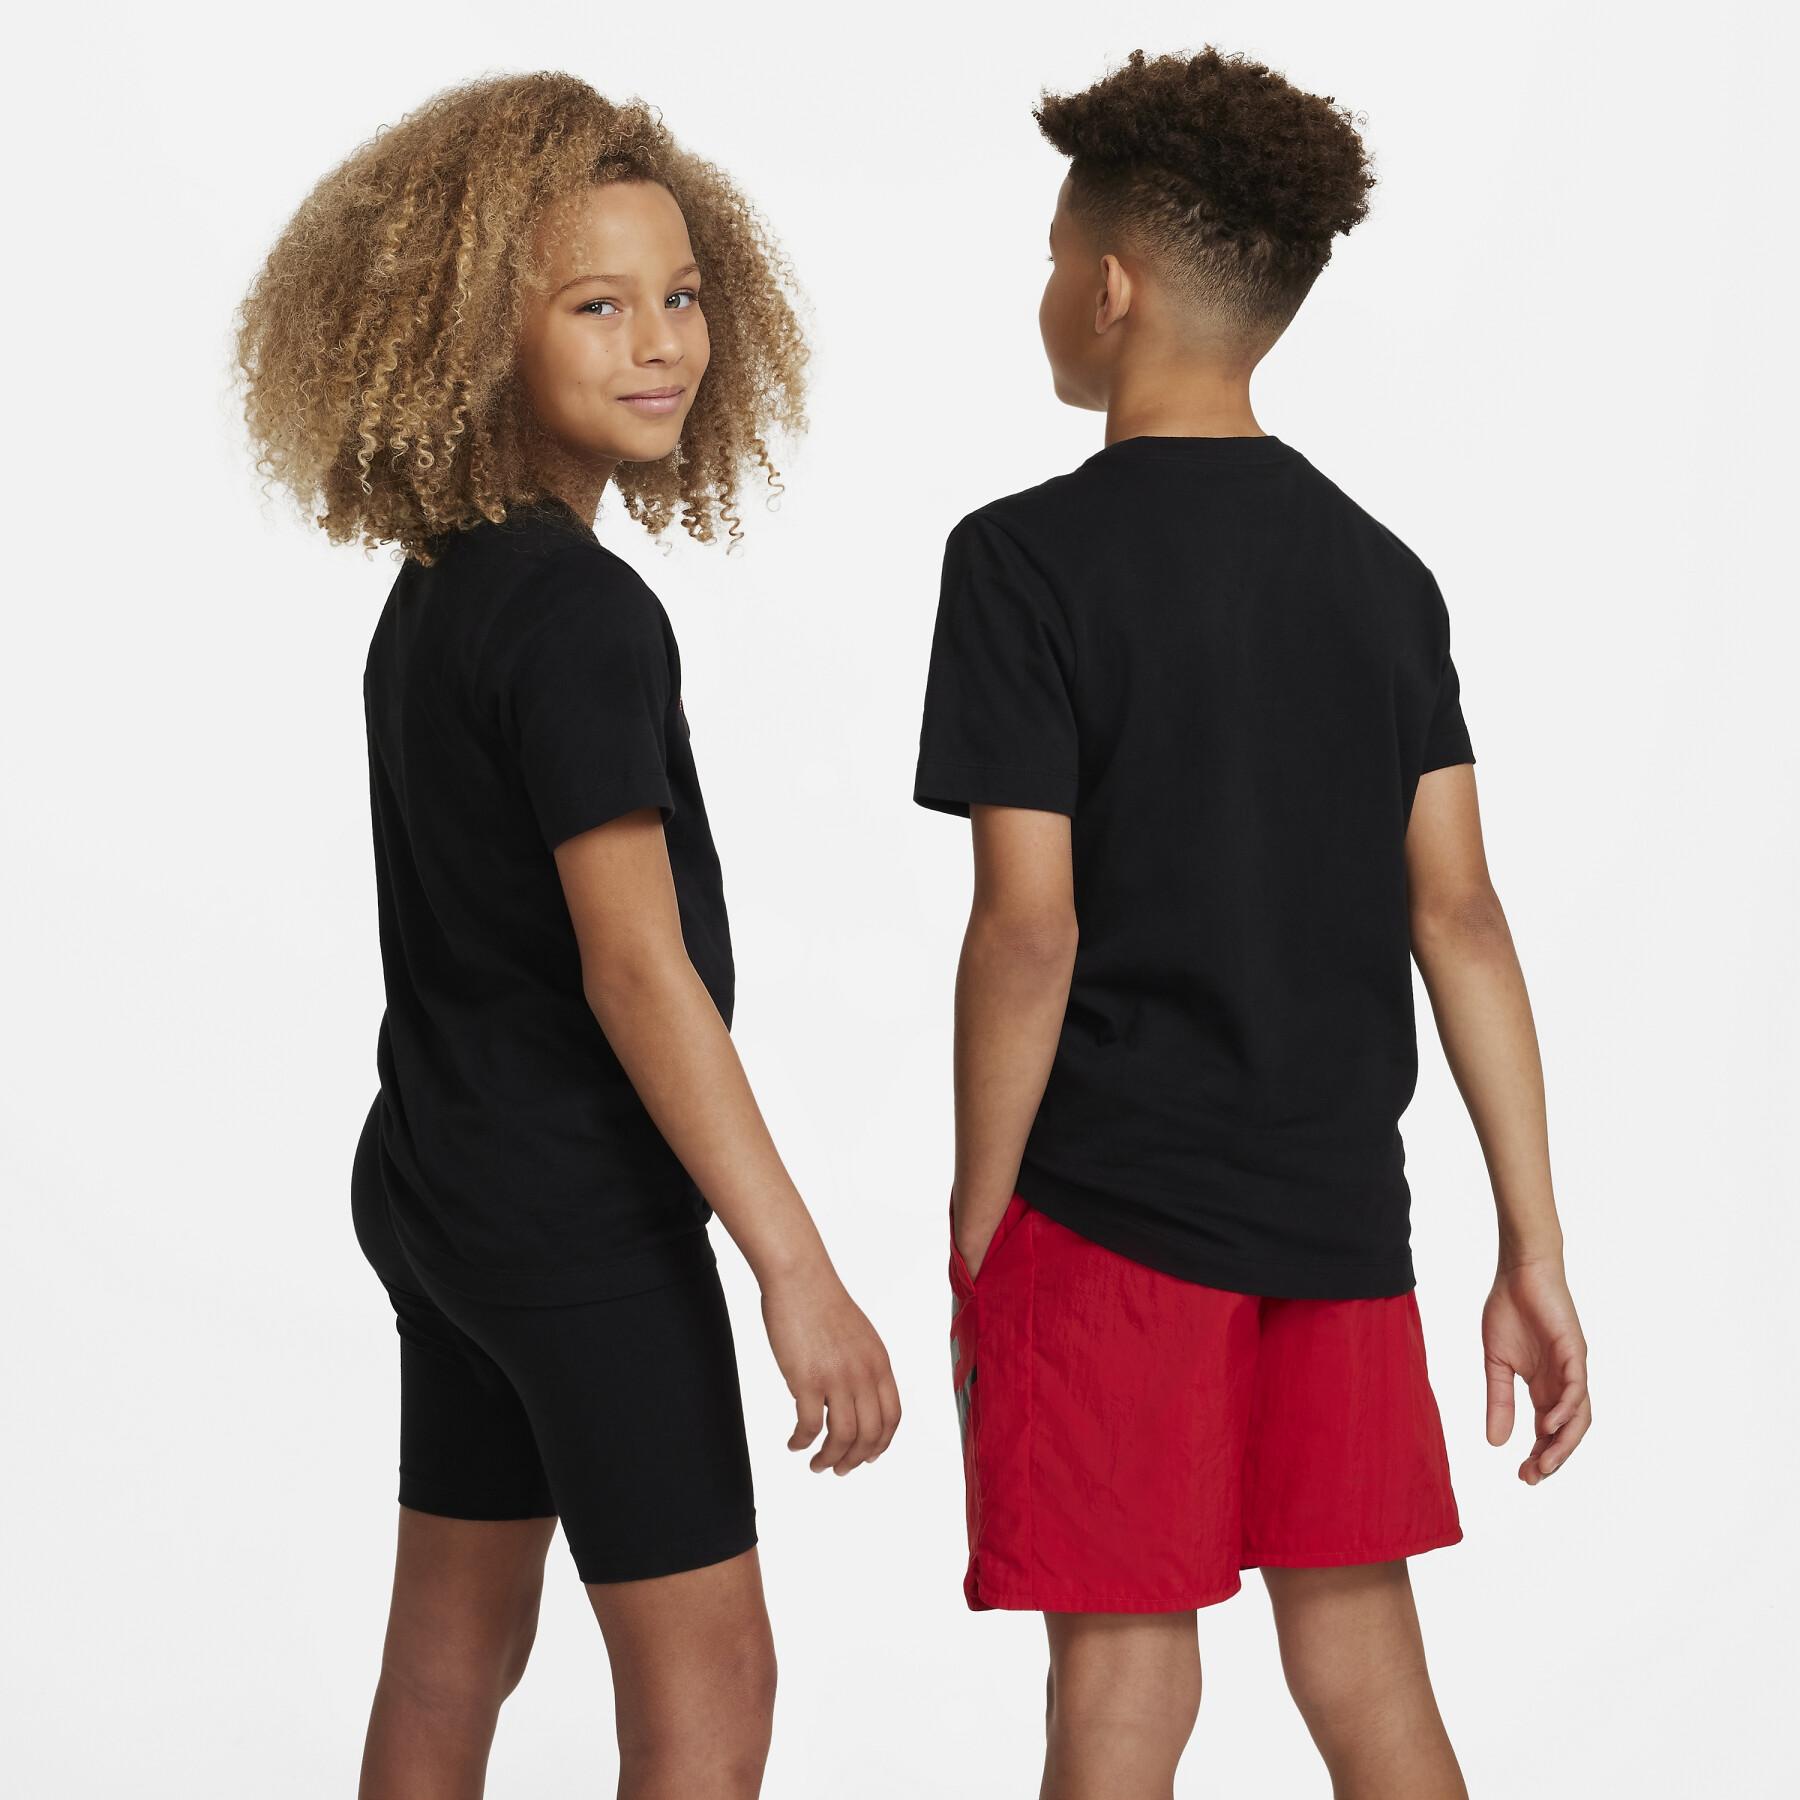 Camiseta infantil Nike Core Brandmark 3